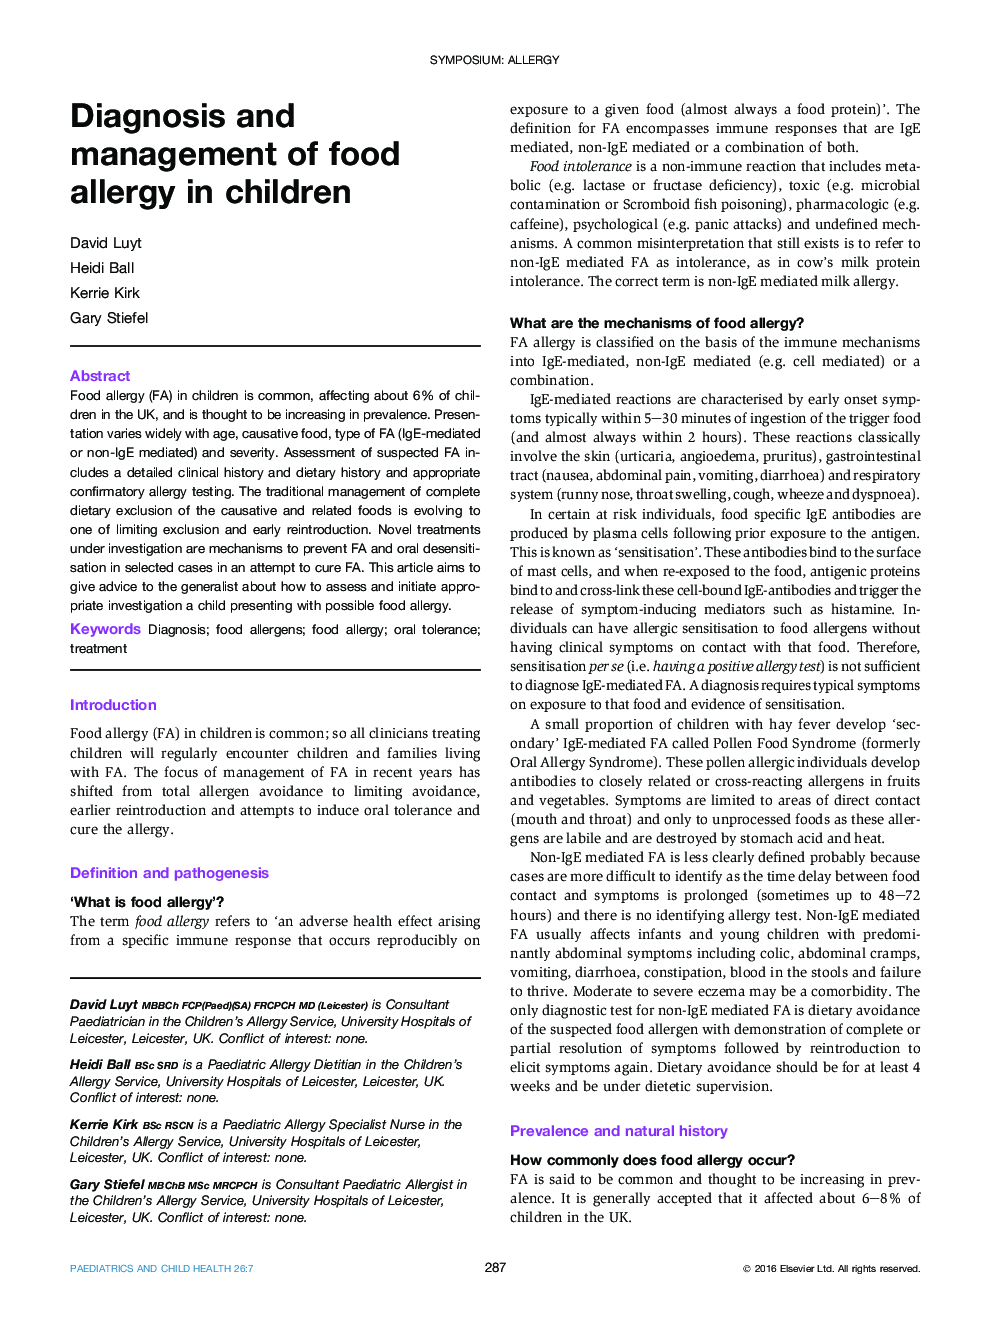 تشخیص و مدیریت آلرژی غذایی در کودکان 